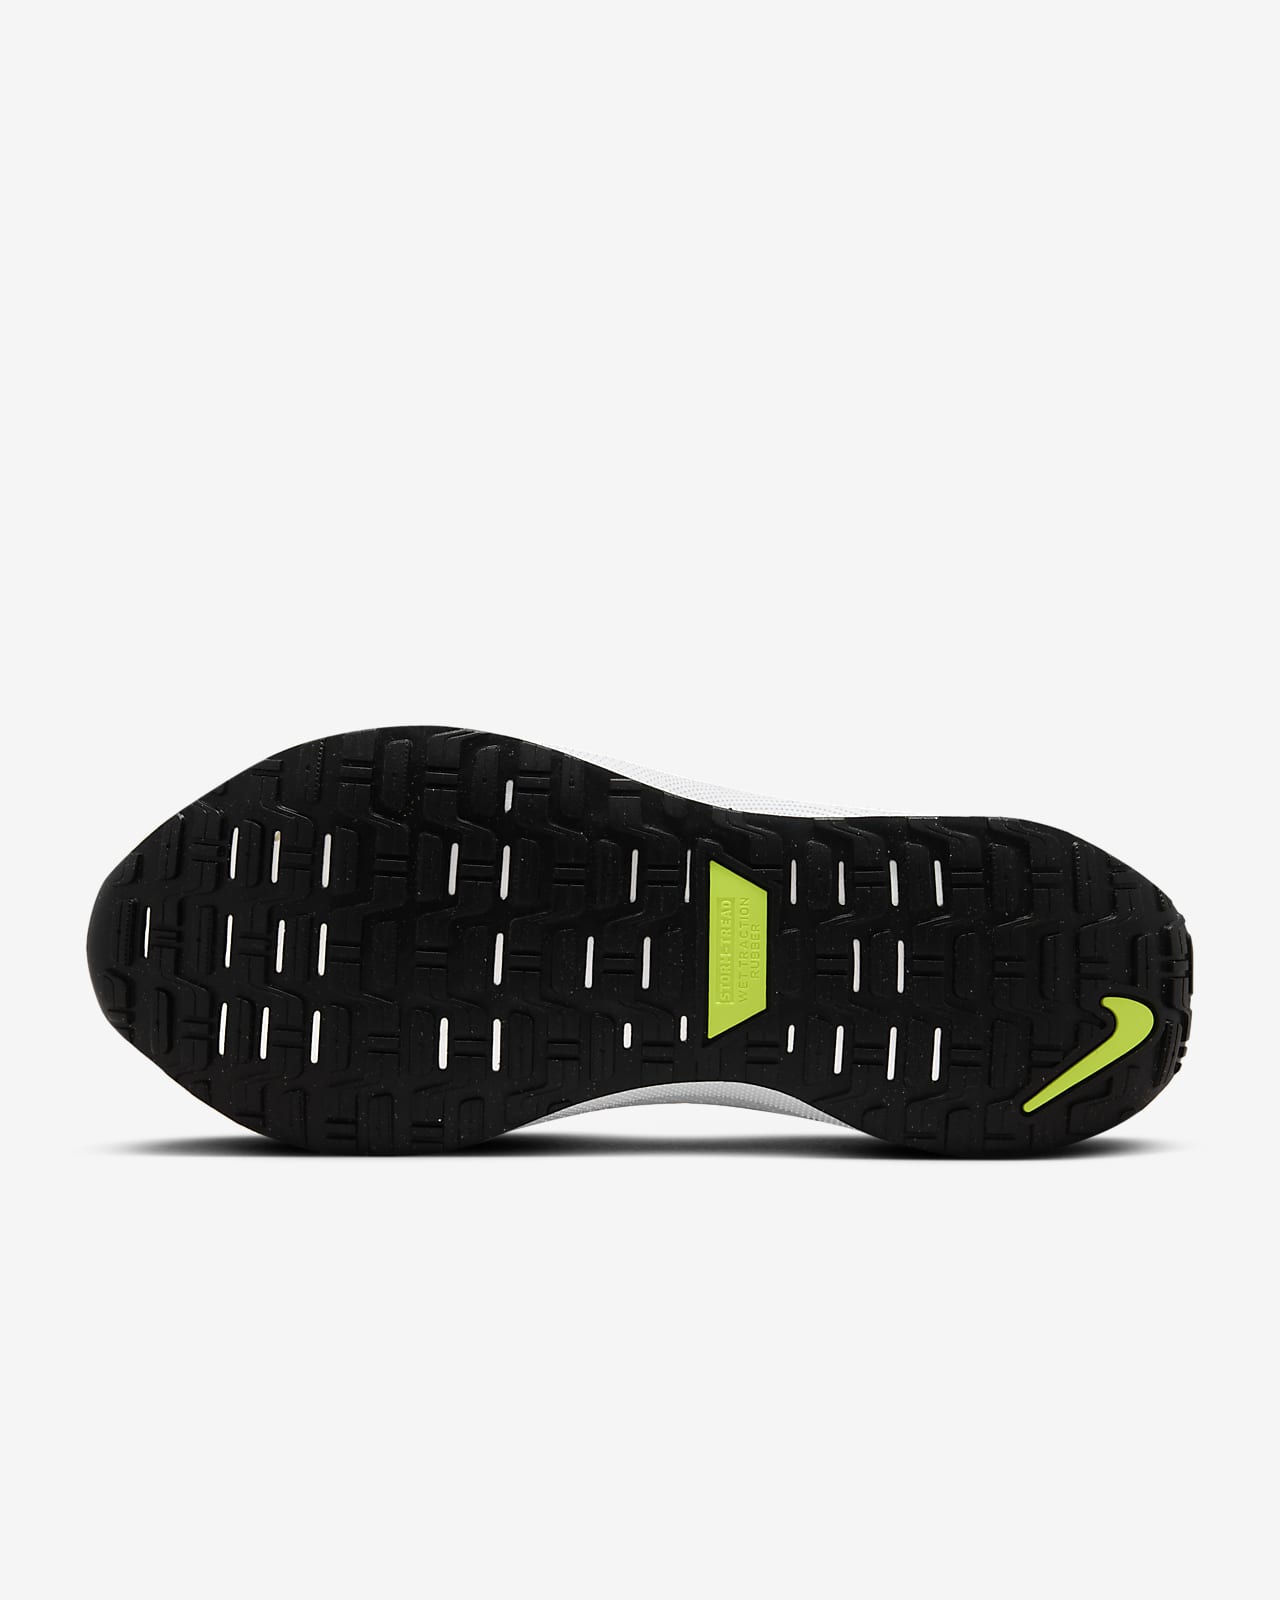 Nike InfinityRN 4 GORE-TEX Men's Waterproof Road Running Shoes